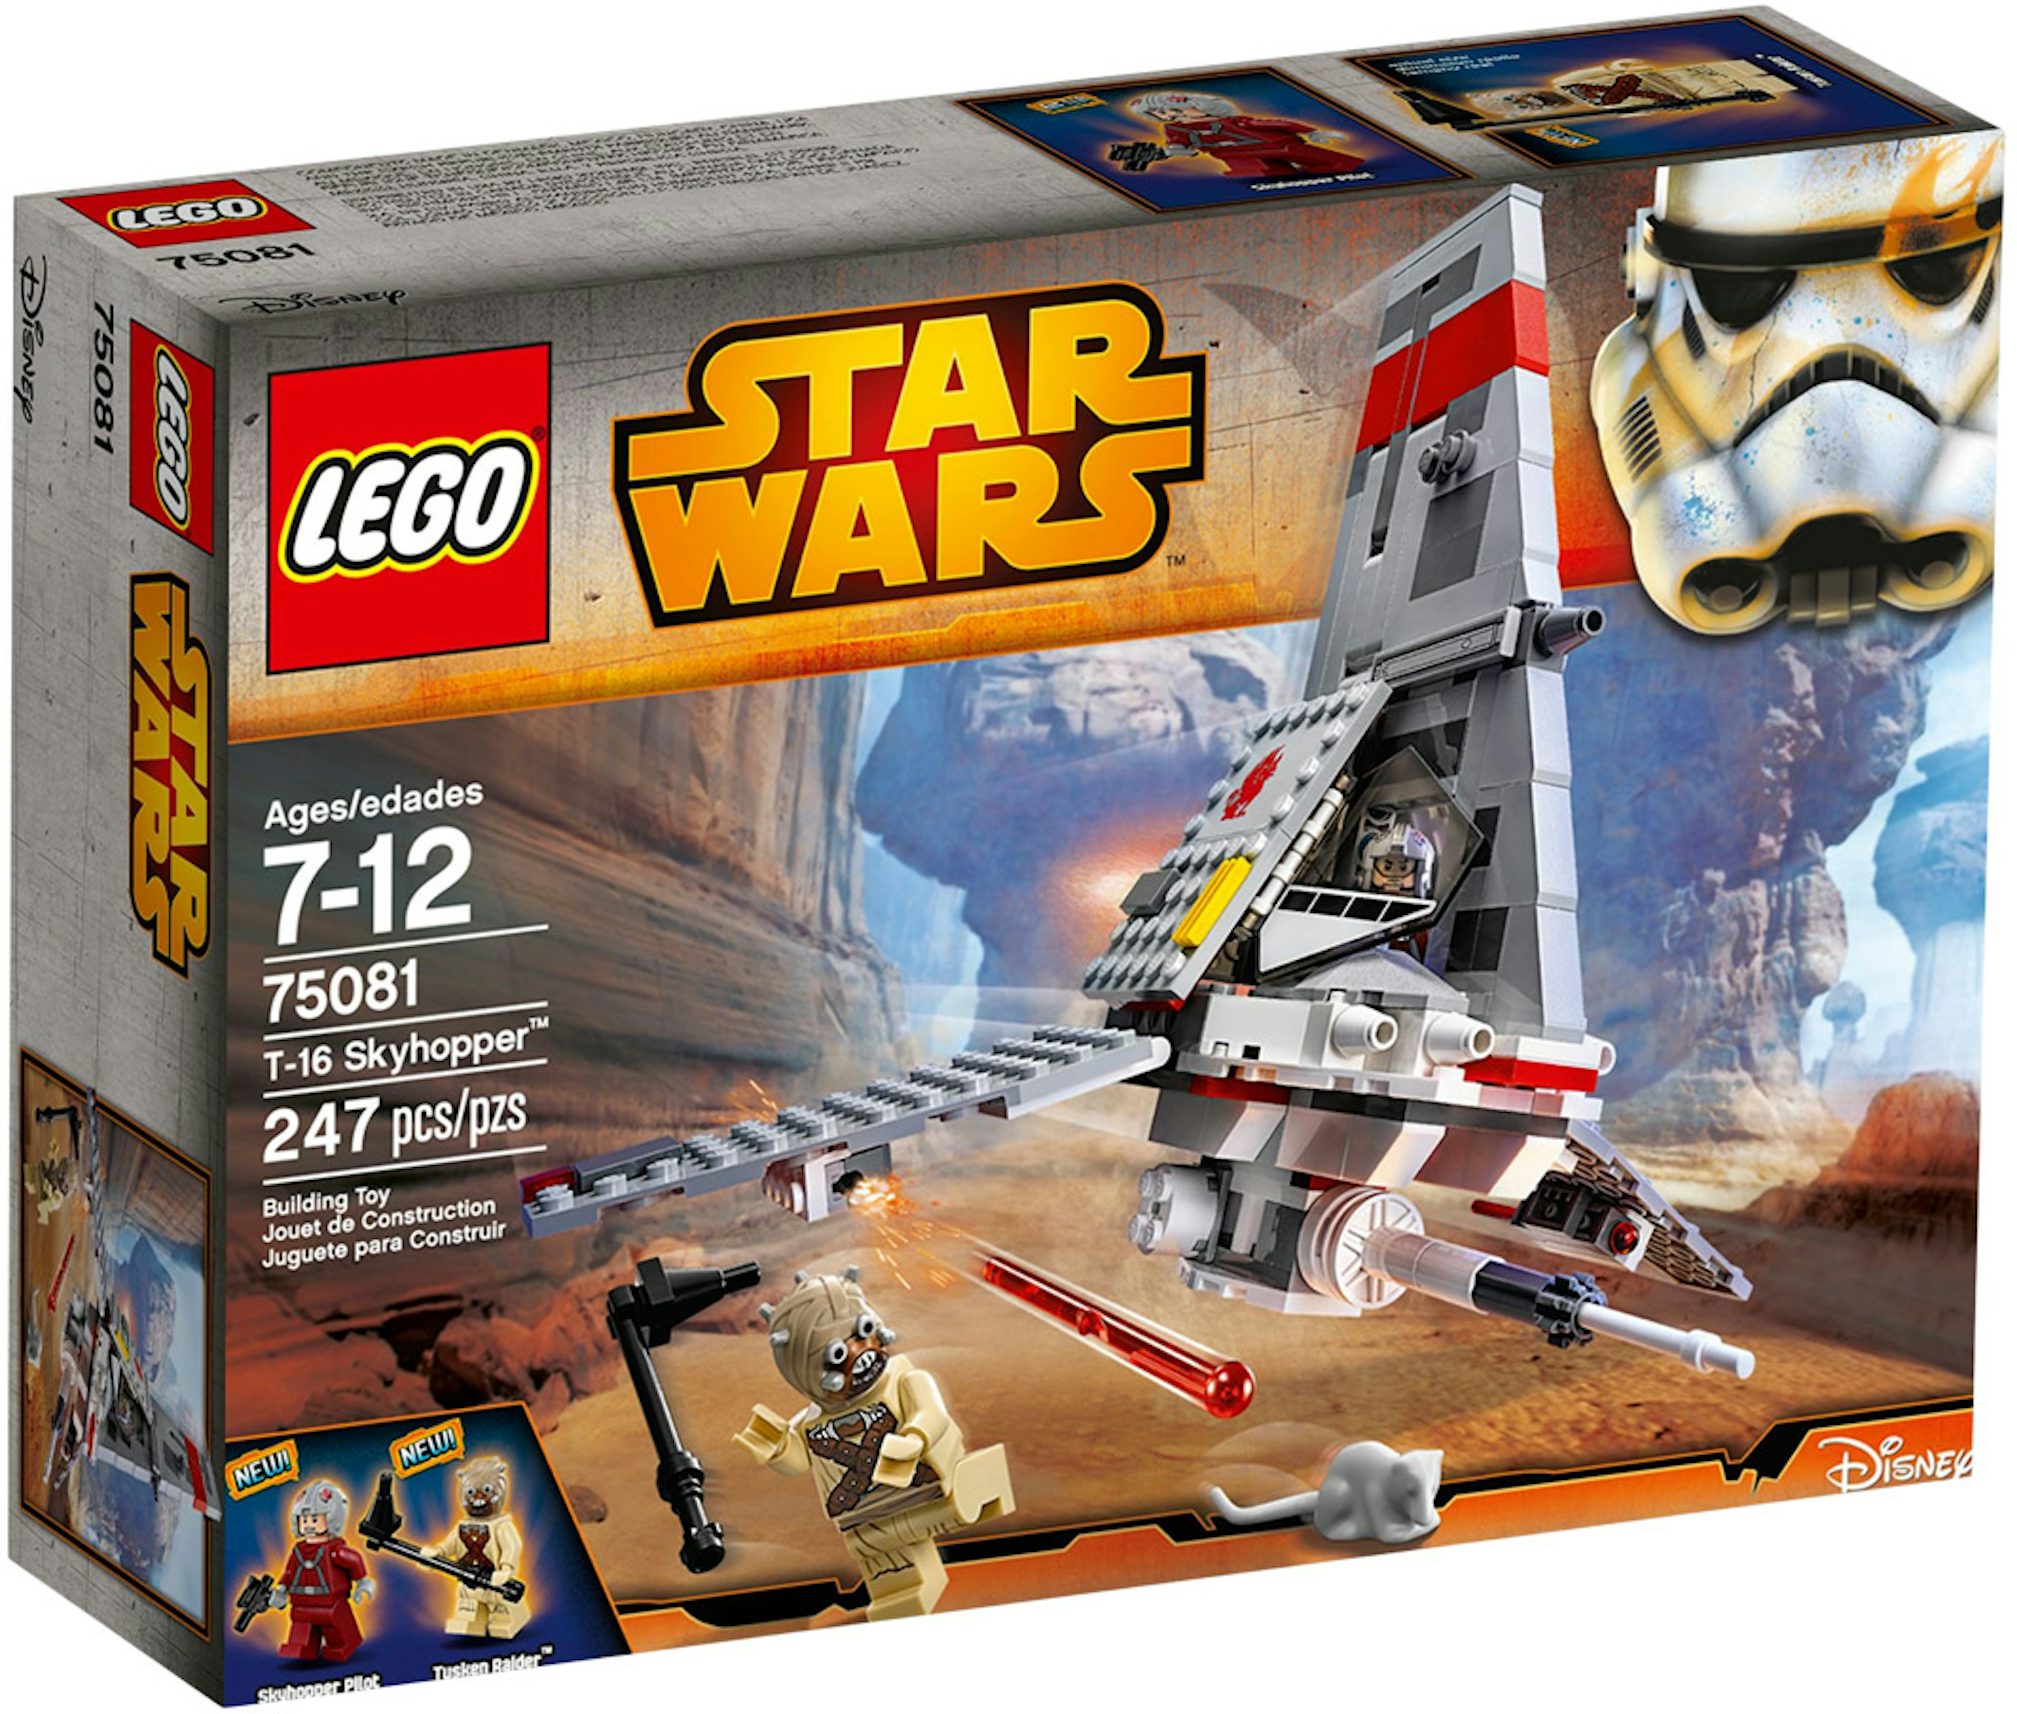 LEGO Wars T-16 Skyhopper Set 75081 US